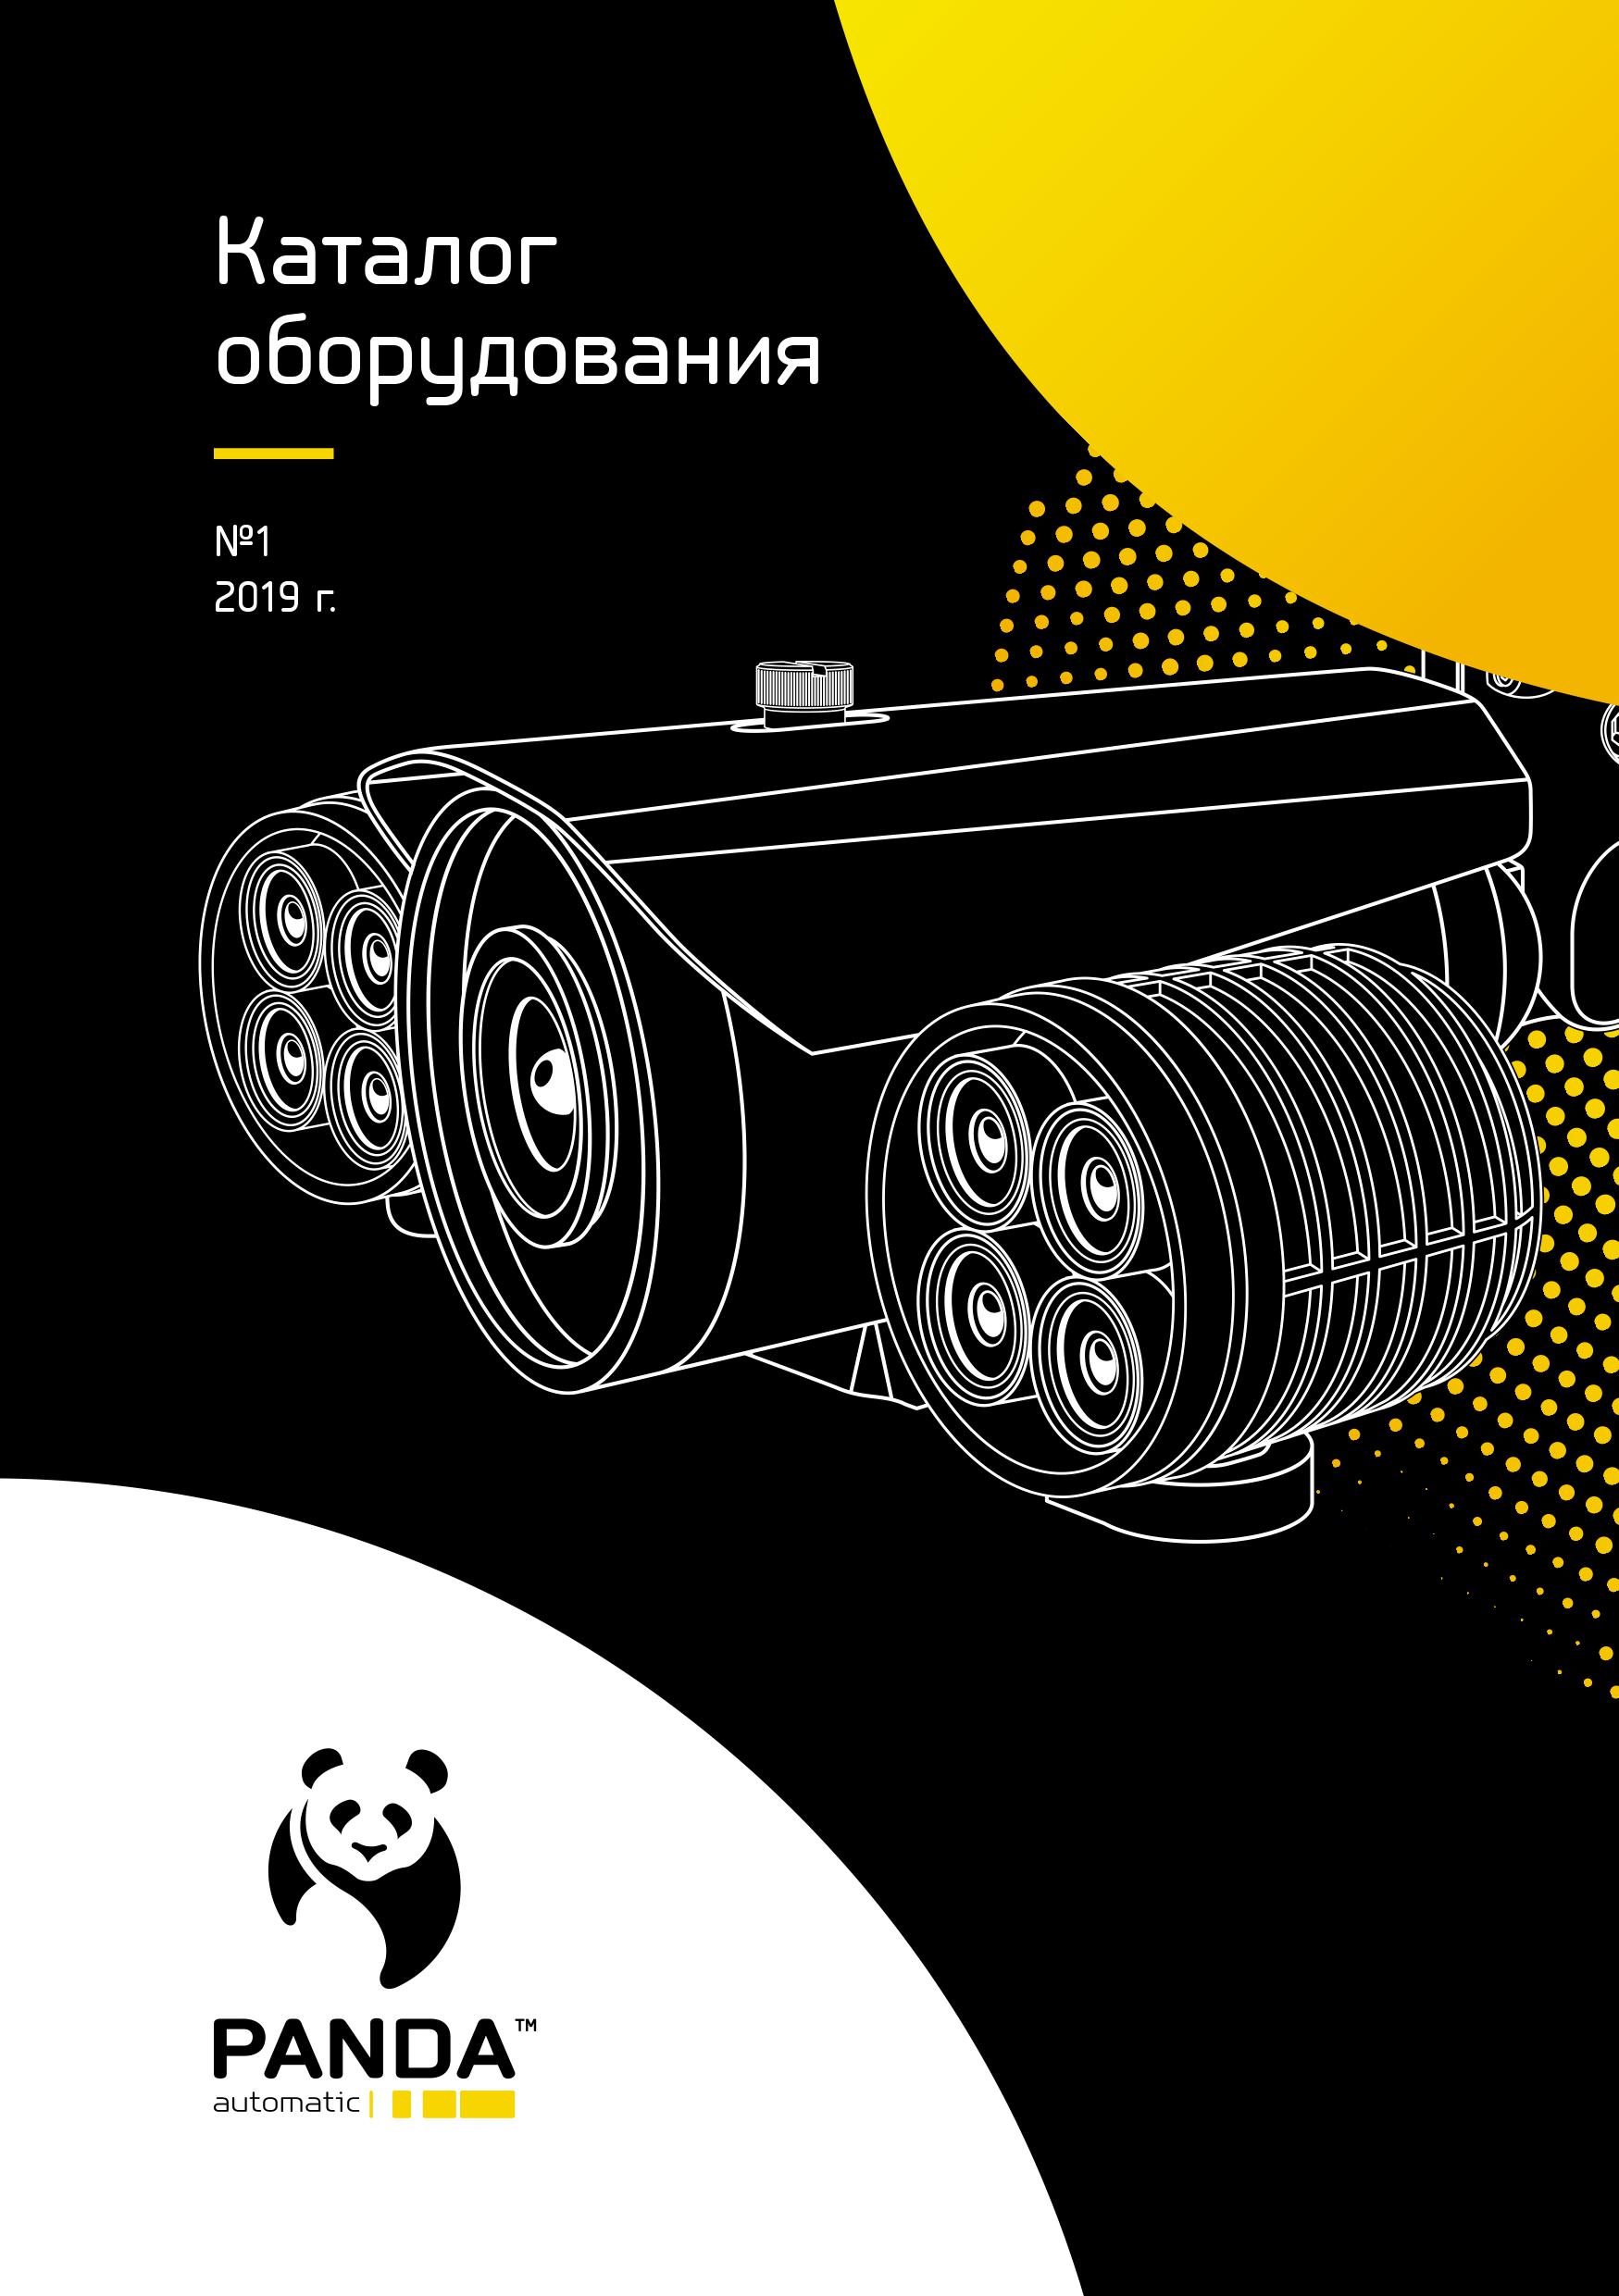 Скачать каталог видеооборудования Panda Automatic. Характеристики камер и видеорегистраторов